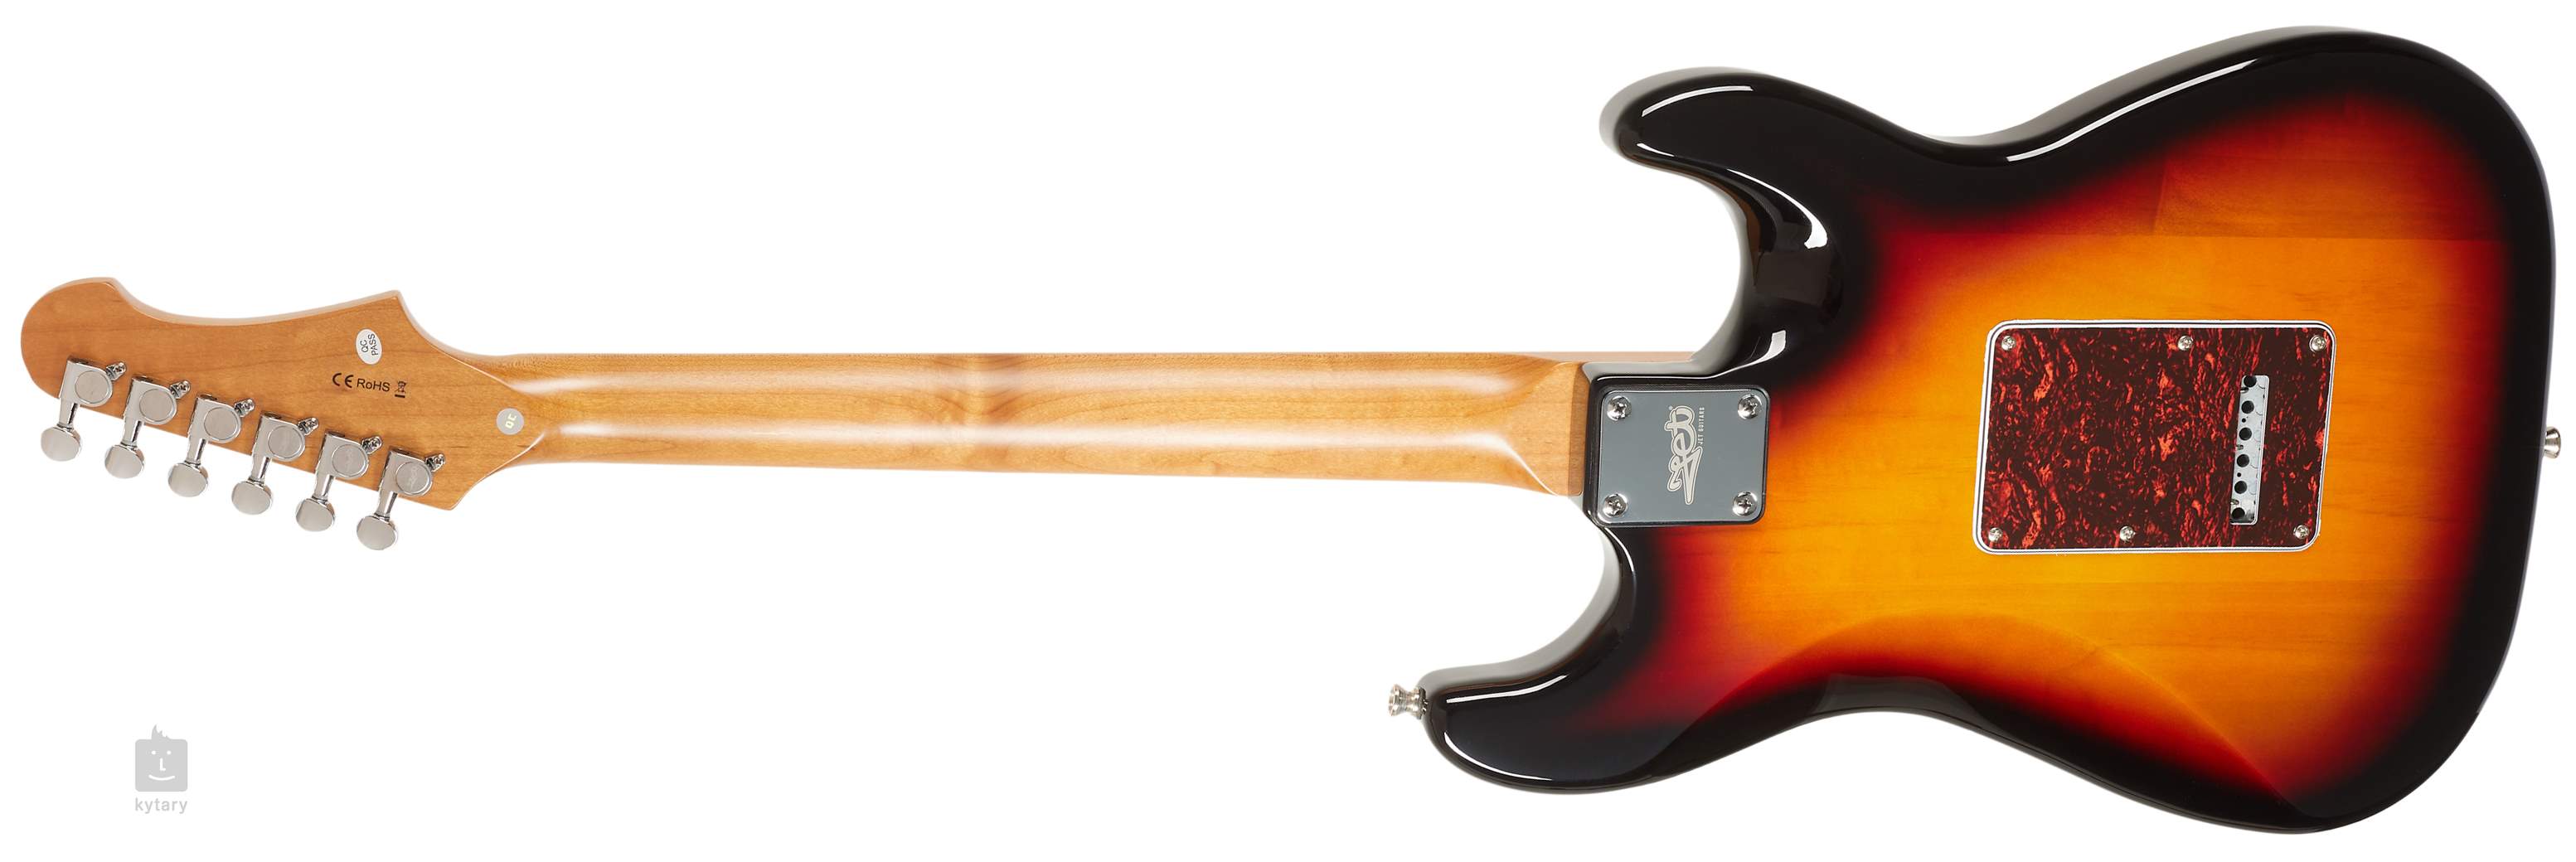 JET GUITARS JS-300 SB LH Guitare électrique gaucher